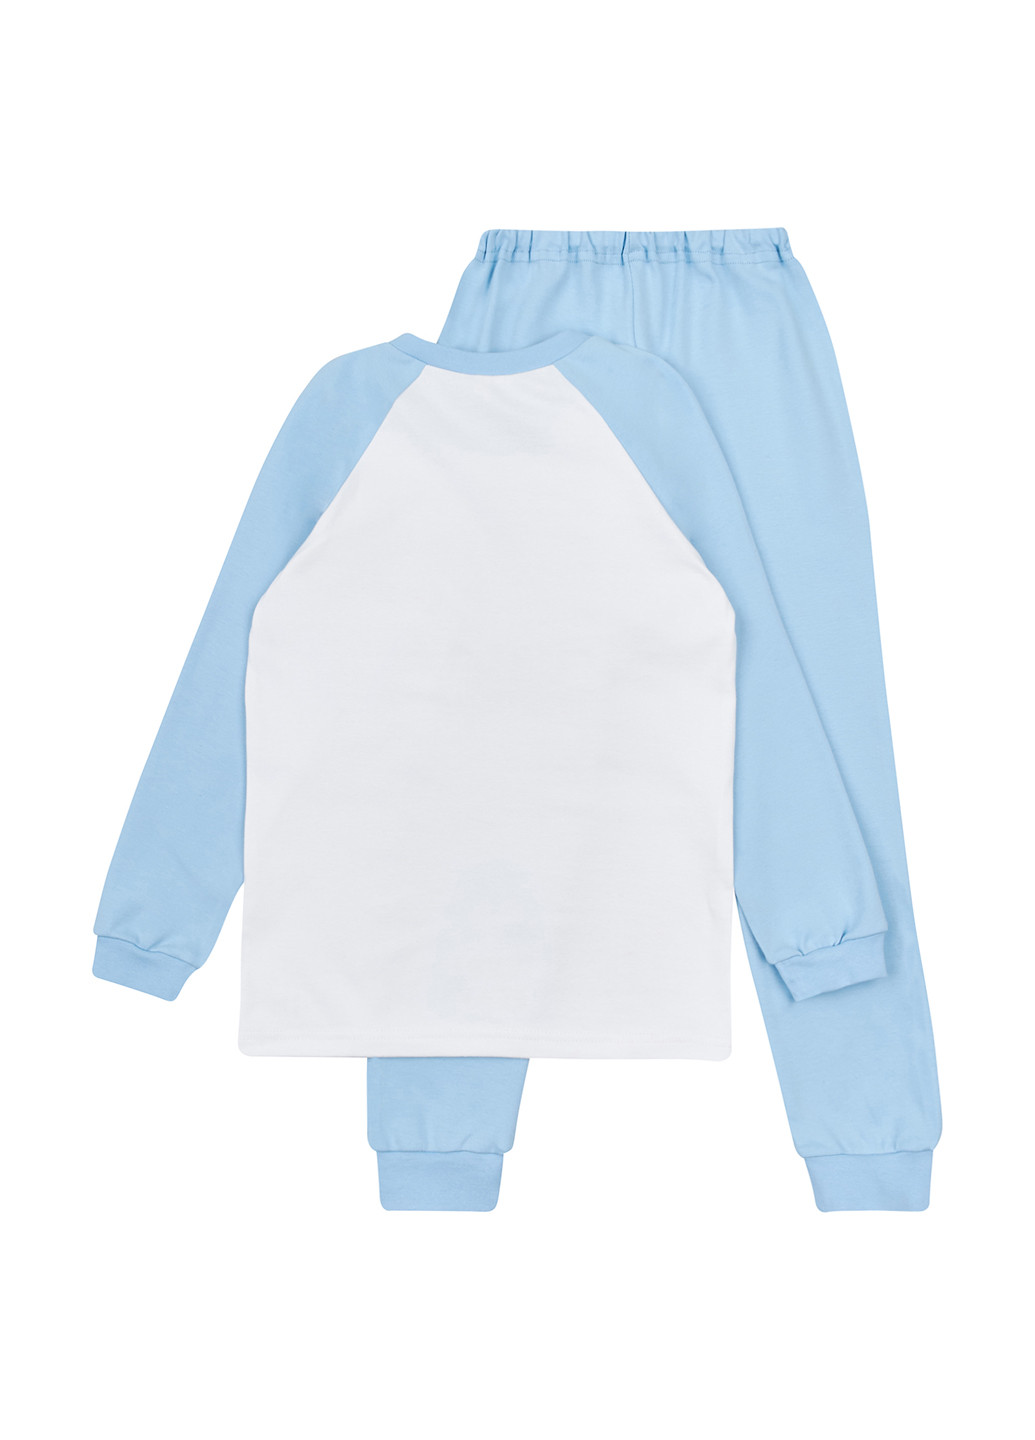 Голубая всесезон пижама (свитшот, брюки) свитшот + брюки Garnamama